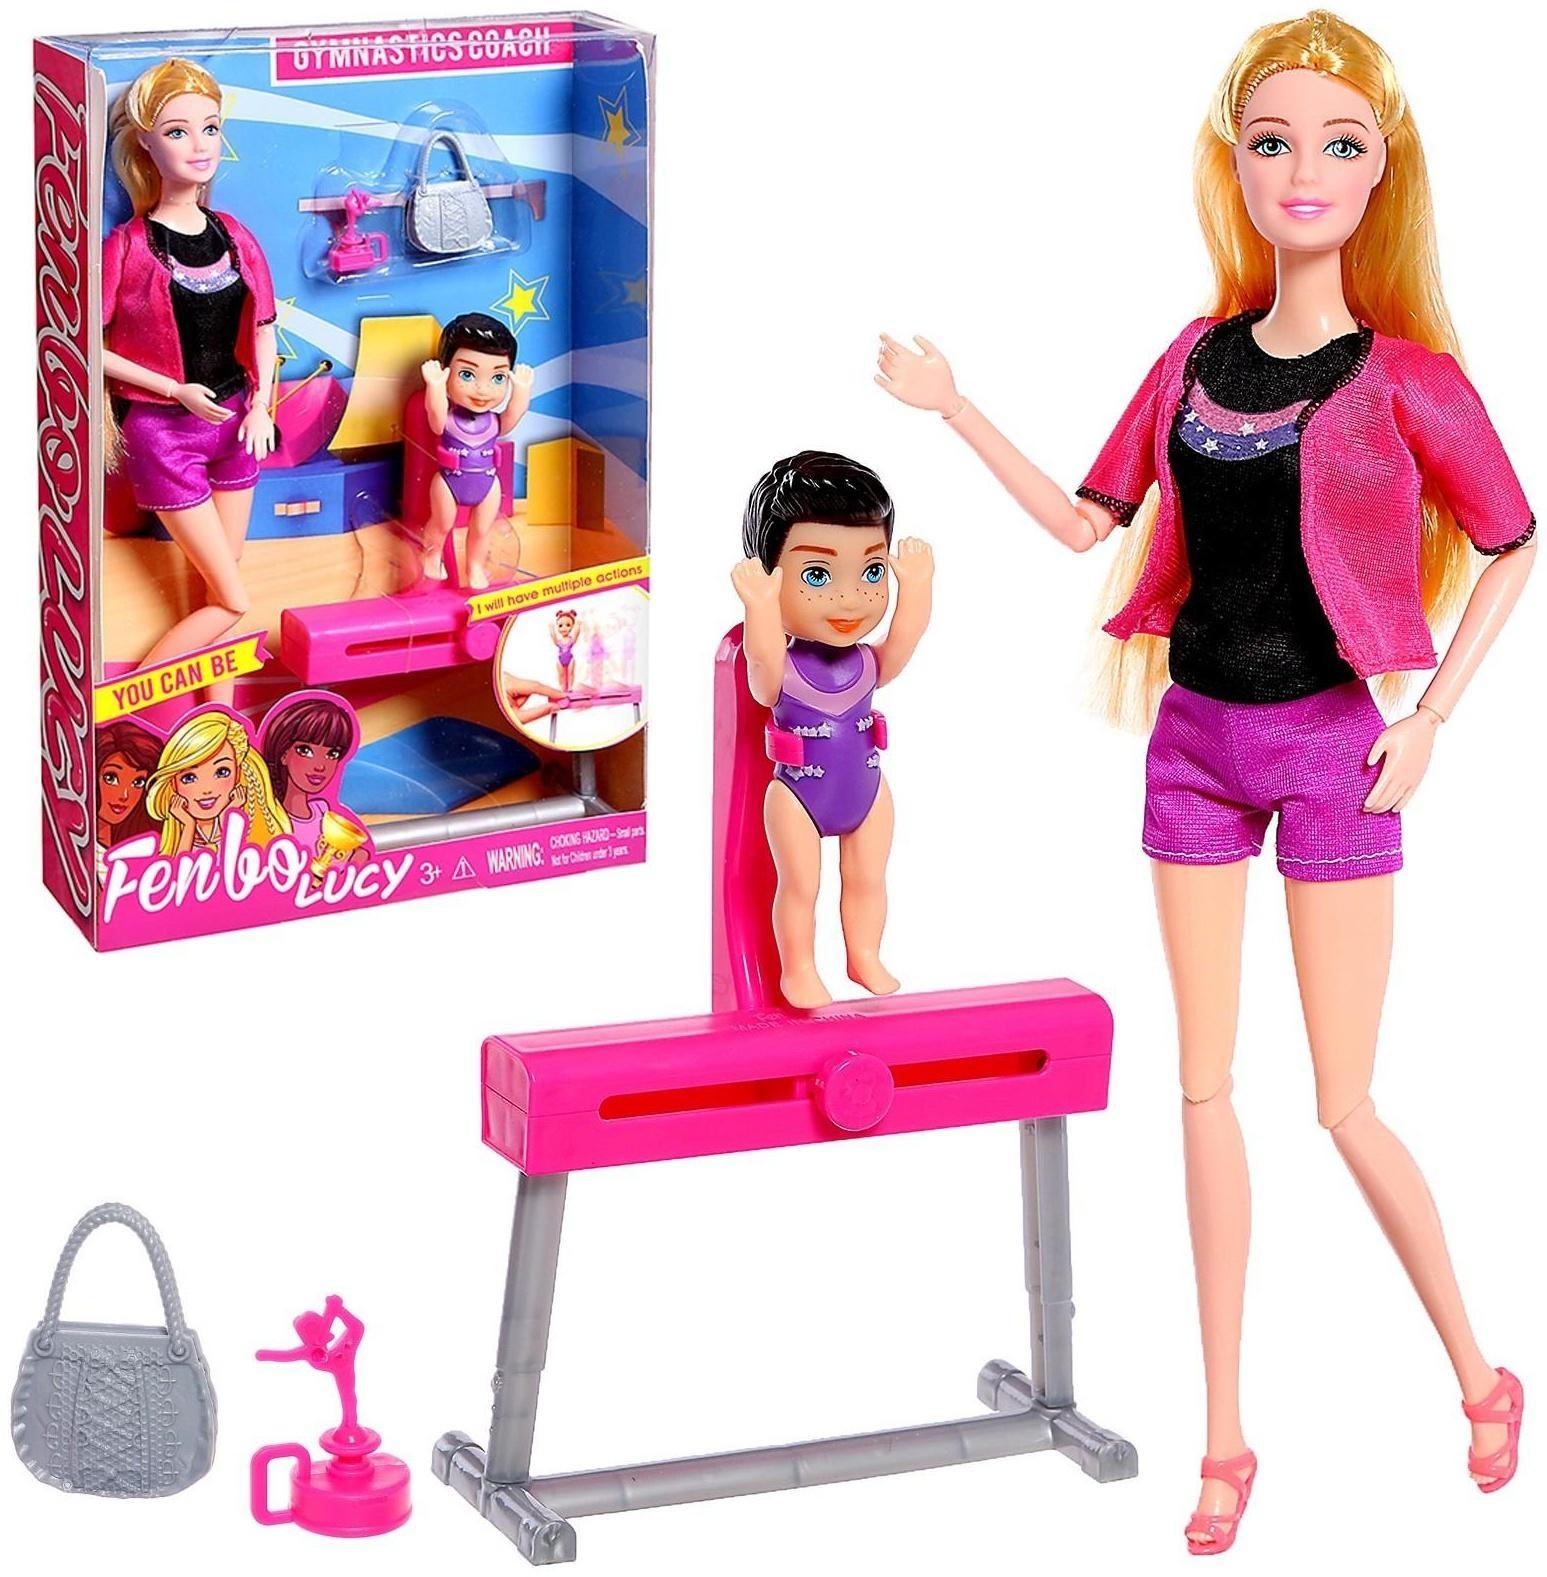 Кукла-модель шарнирная «Спортсменка» с малышкой, с аксессуарами, МИКС